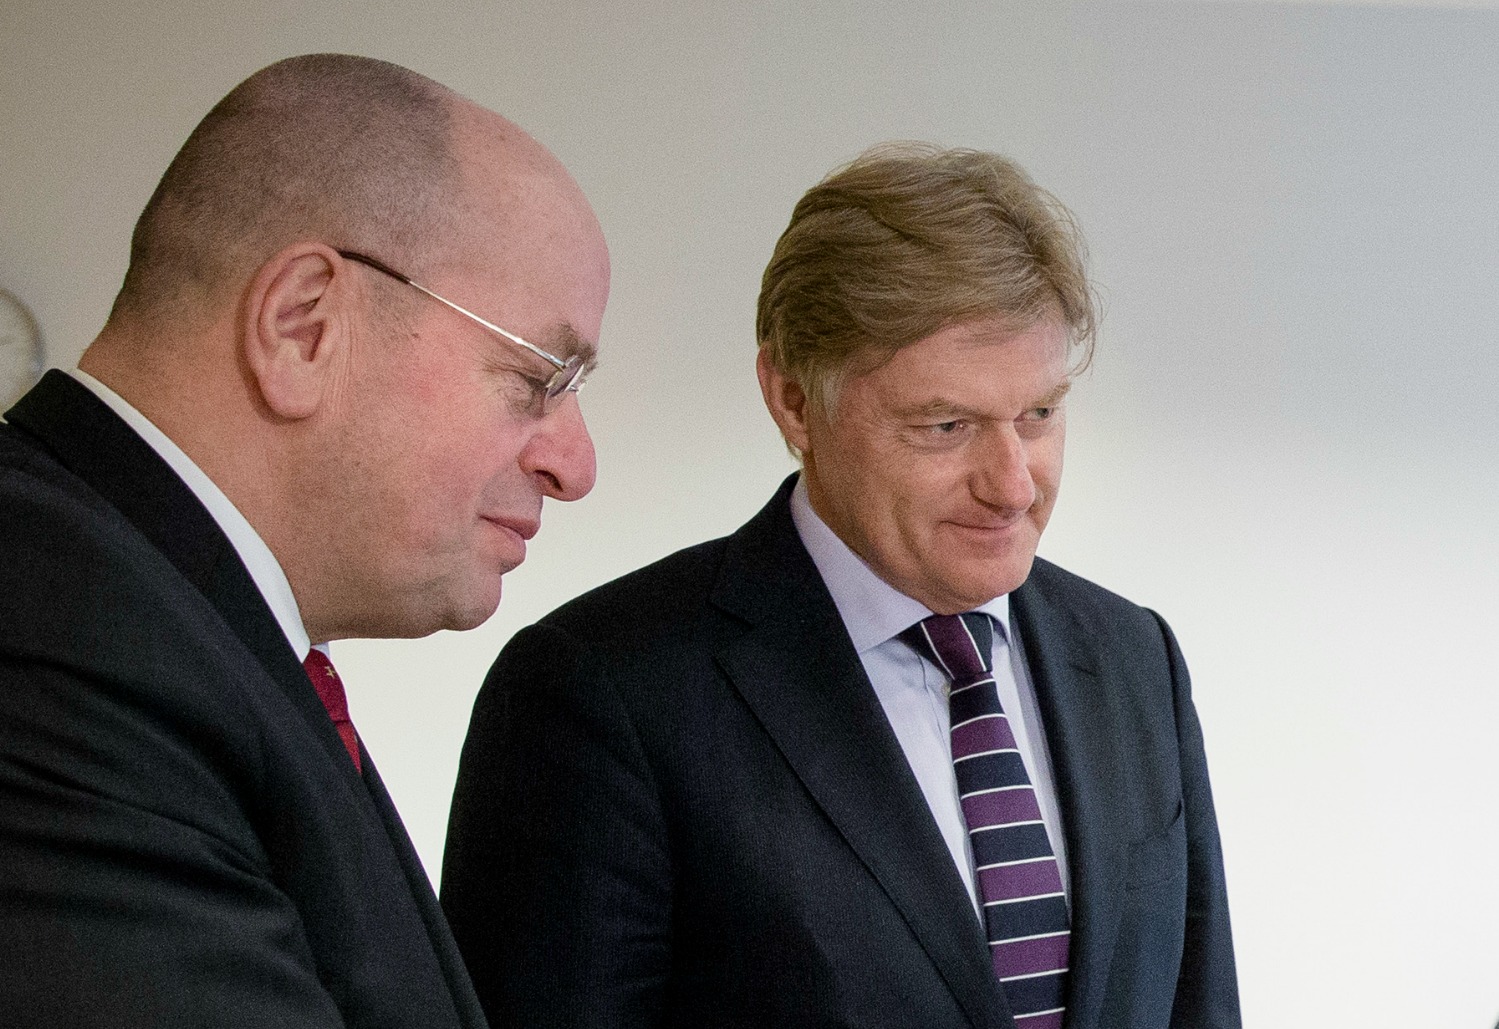 Staatssecretaris van Volksgezondheid, Welzijn en Sport Martin van Rijn (R) en staatssecretaris van Veiligheid en Justitie Fred Teeven (L)